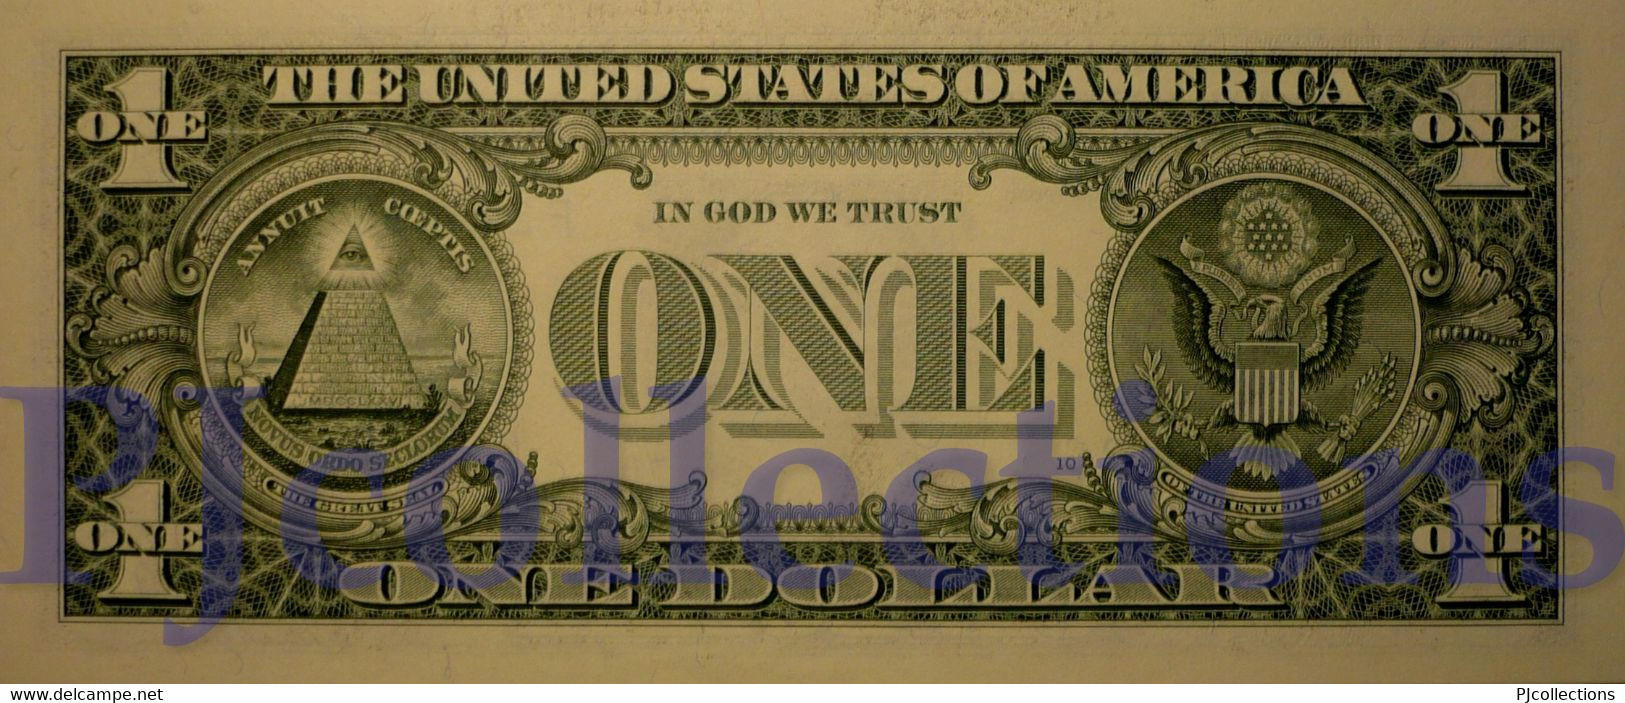 UNITED STATES OF AMERICA 1 DOLLAR 2003 PICK 515a UNC PREFIX "F" - Billetes De La Reserva Federal (1928-...)